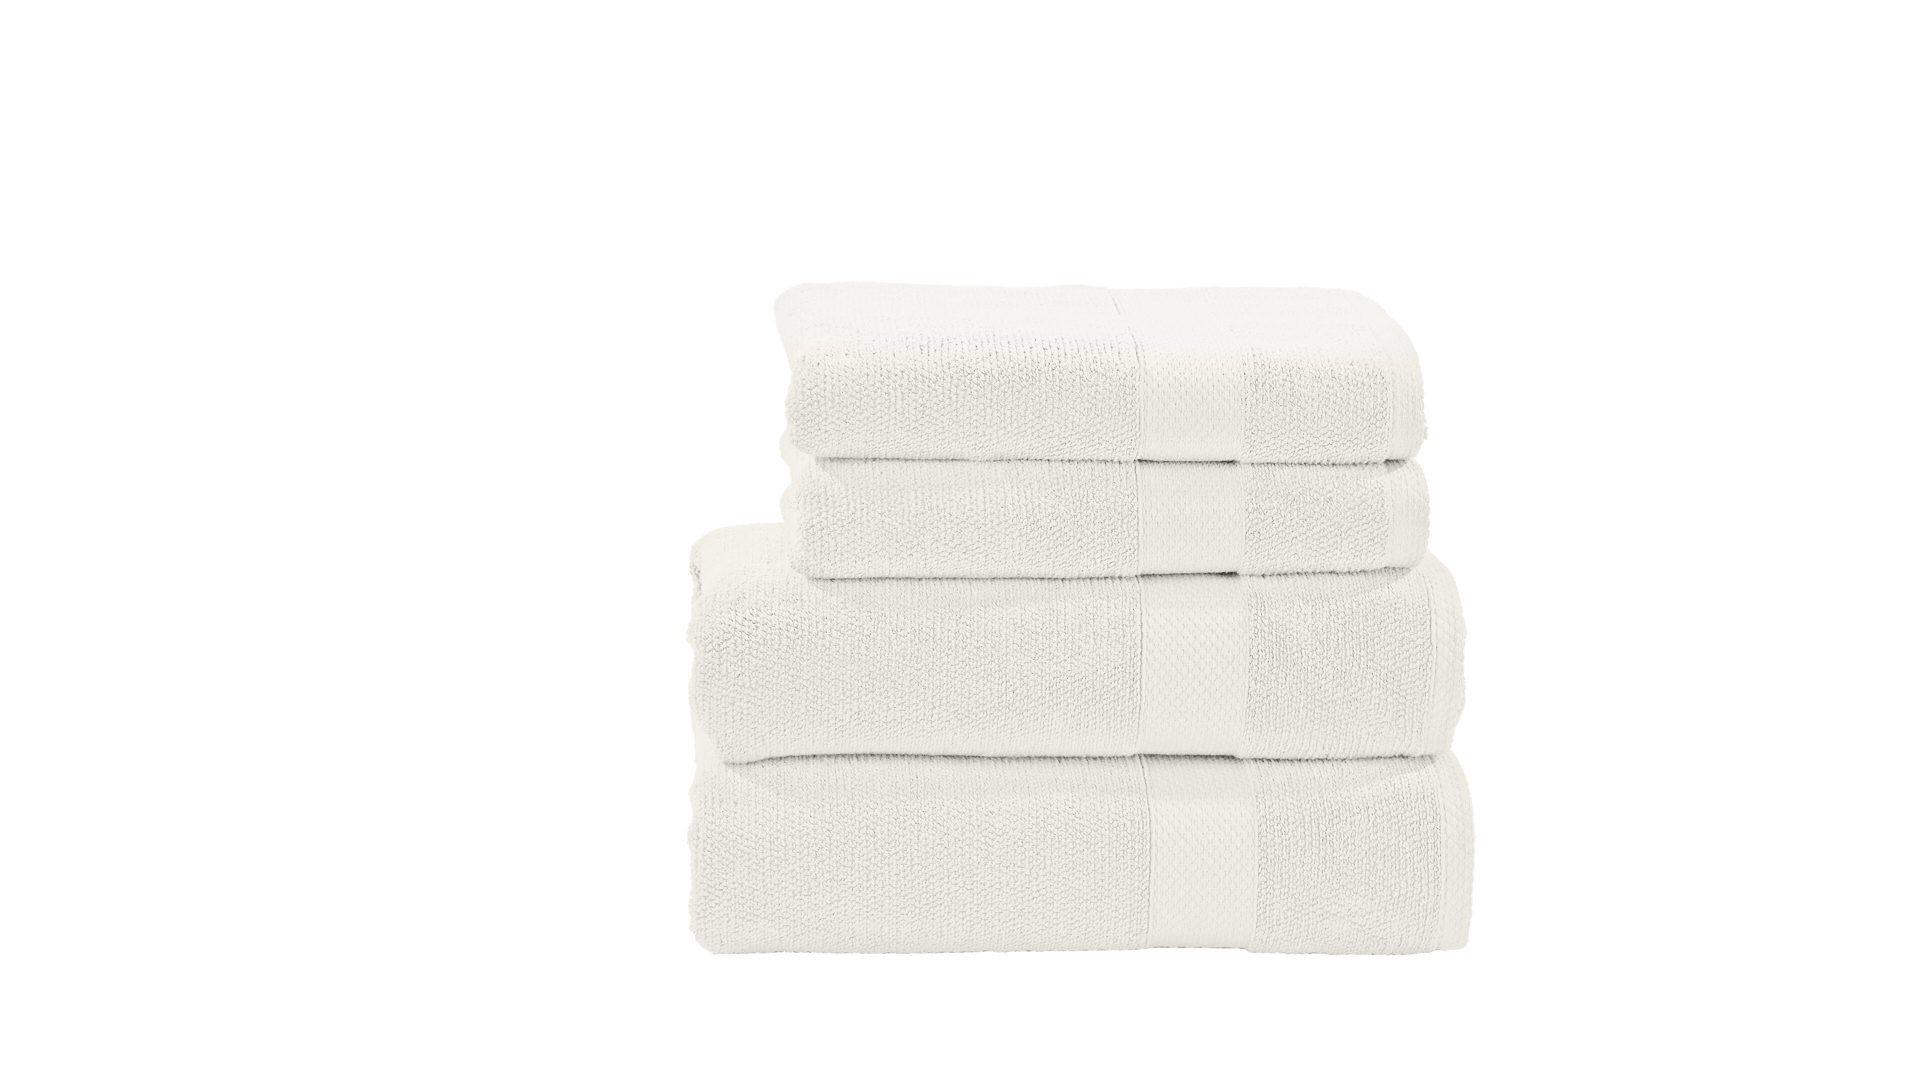 Handtuch-Set Done.® aus Stoff in Weiß done.® Handtuch-Set Deluxe weiße Baumwolle – vierteilig